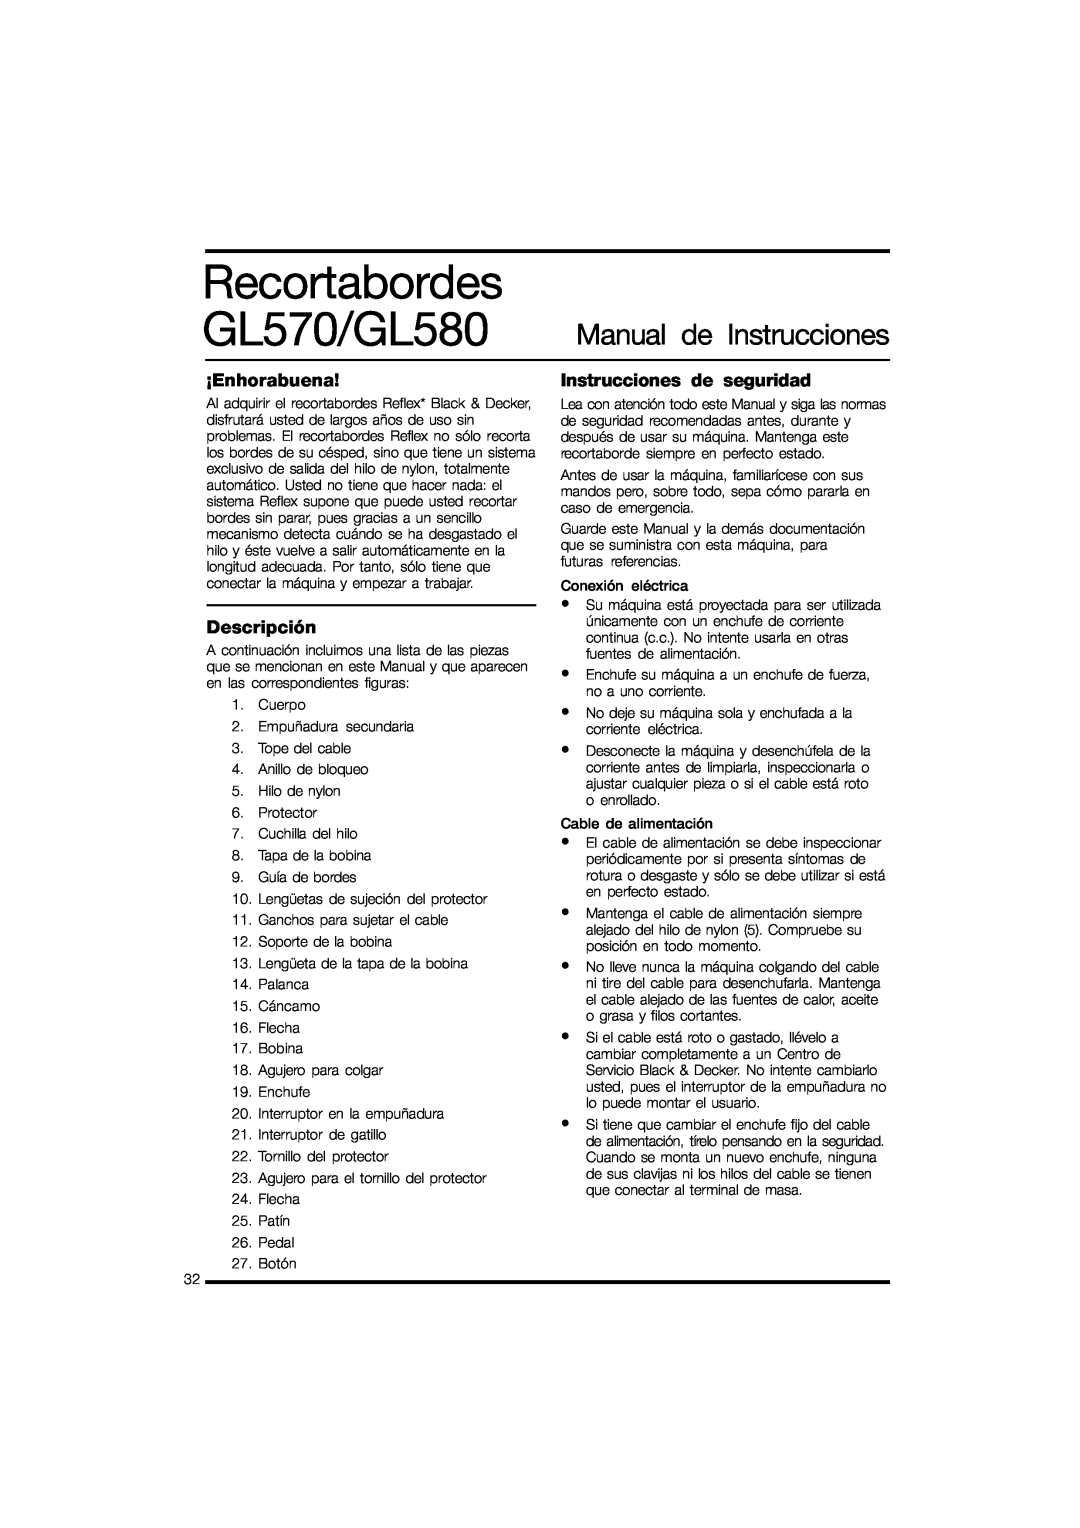 Black & Decker instruction manual Recortabordes, GL570/GL580, Manual de Instrucciones, ¡Enhorabuena, Descripción 